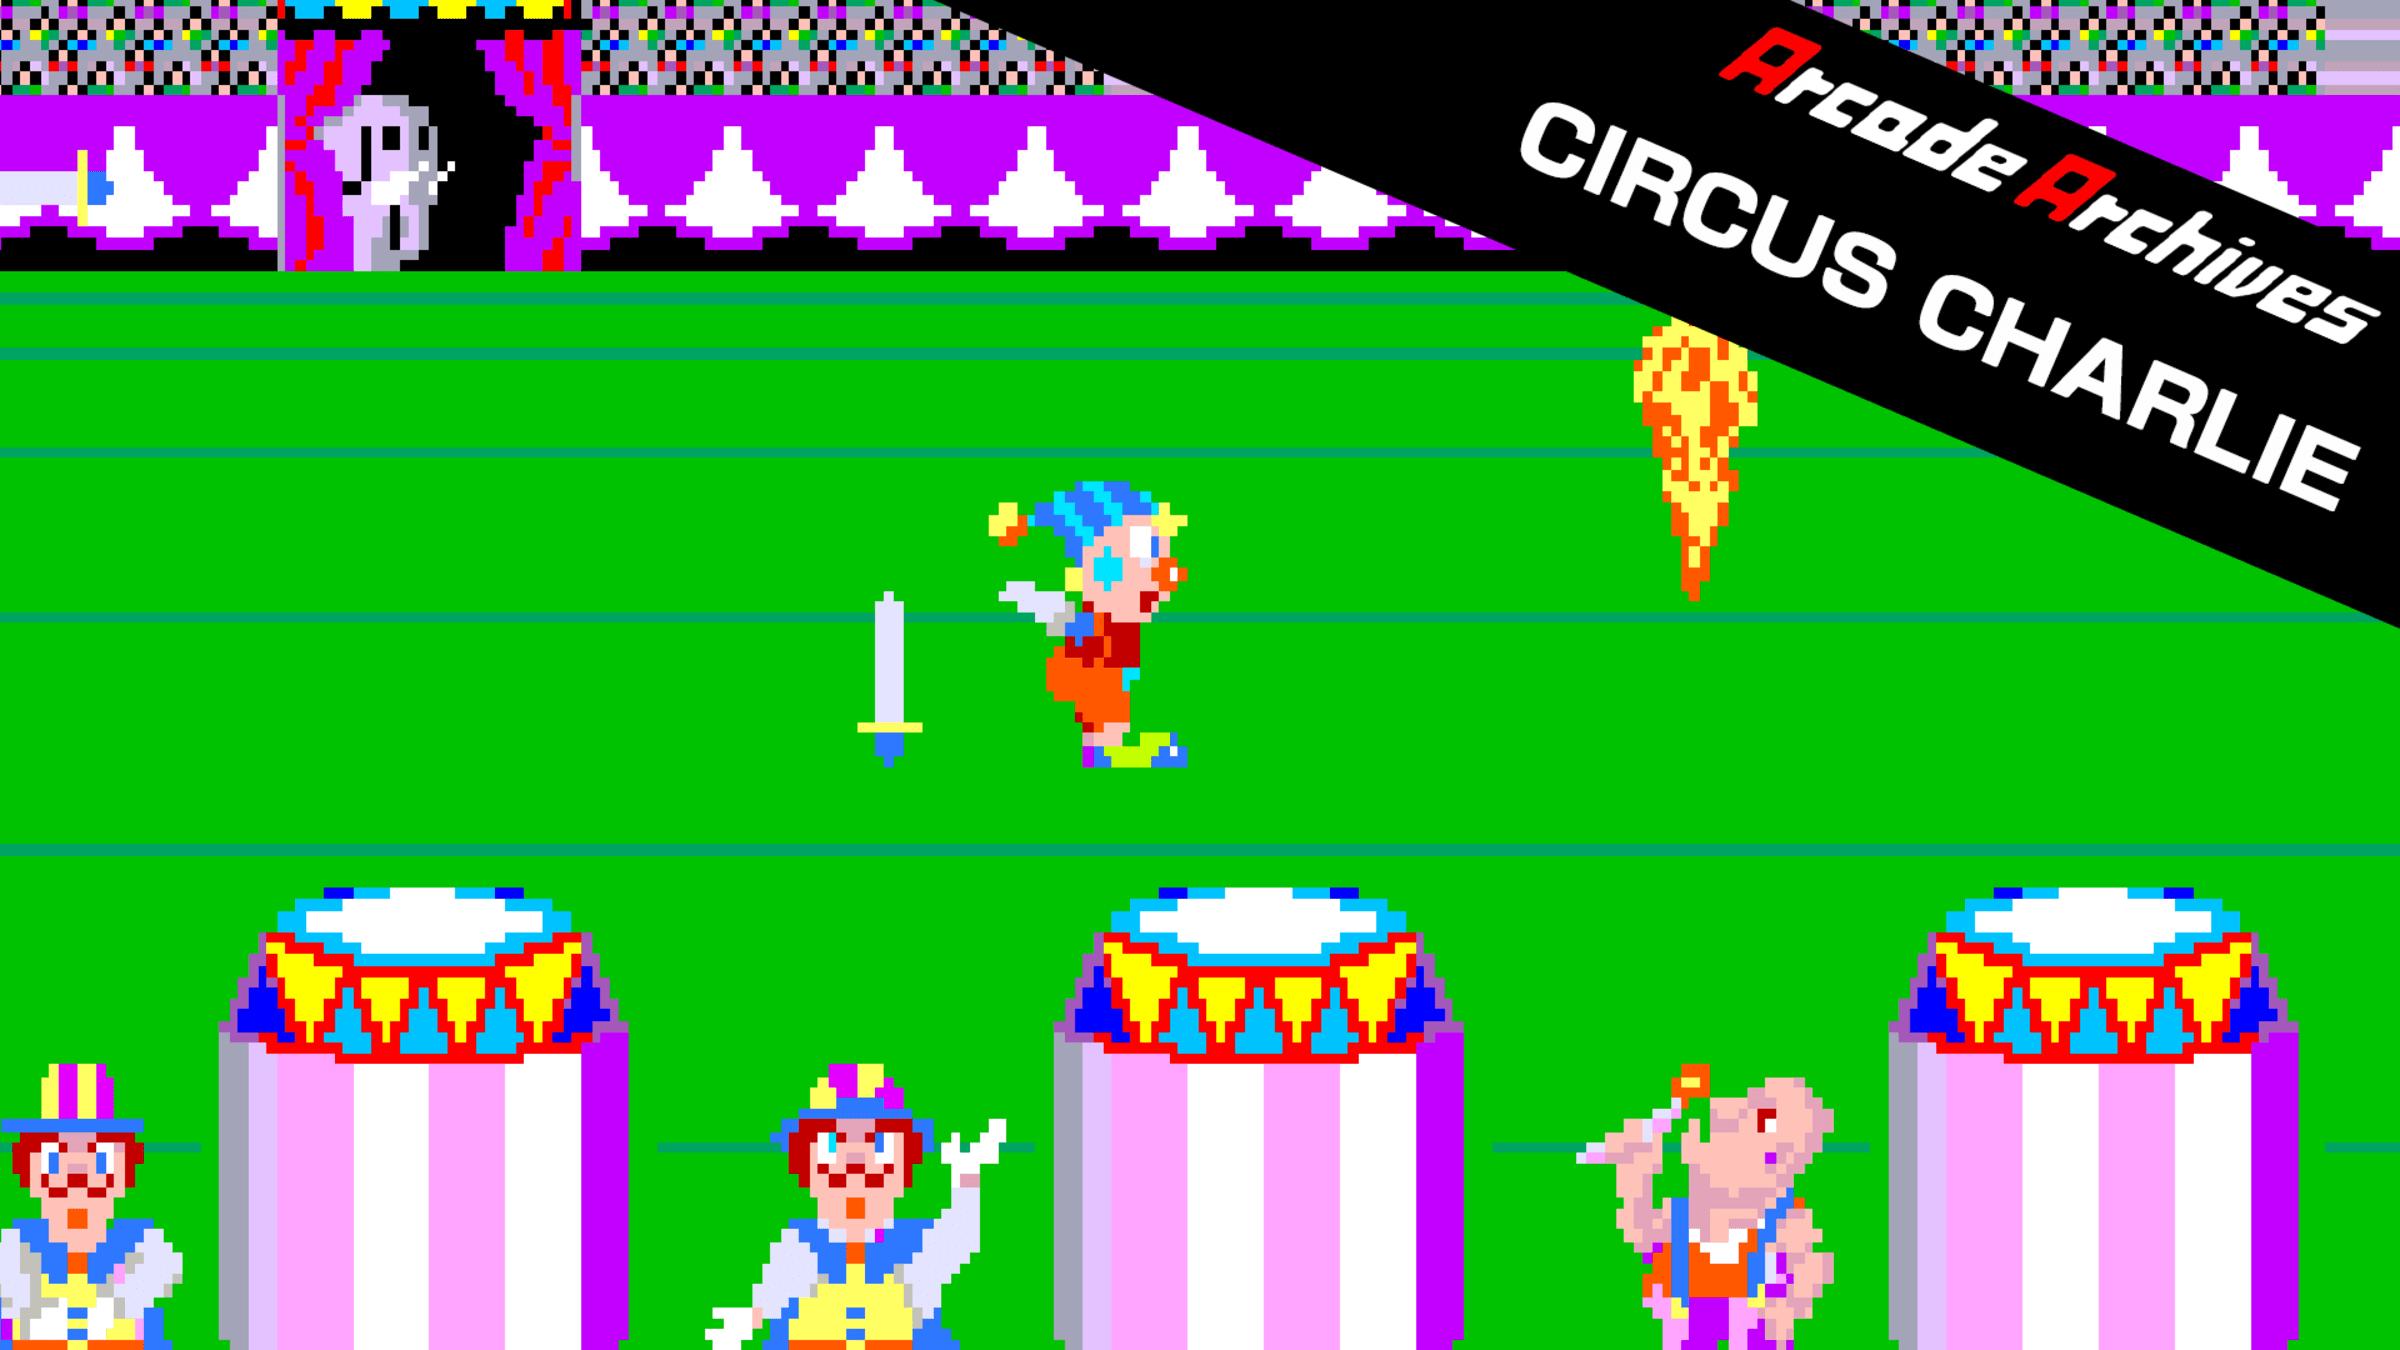 jugar circus charlie online - Cómo se llama el juego de Nintendo del circo